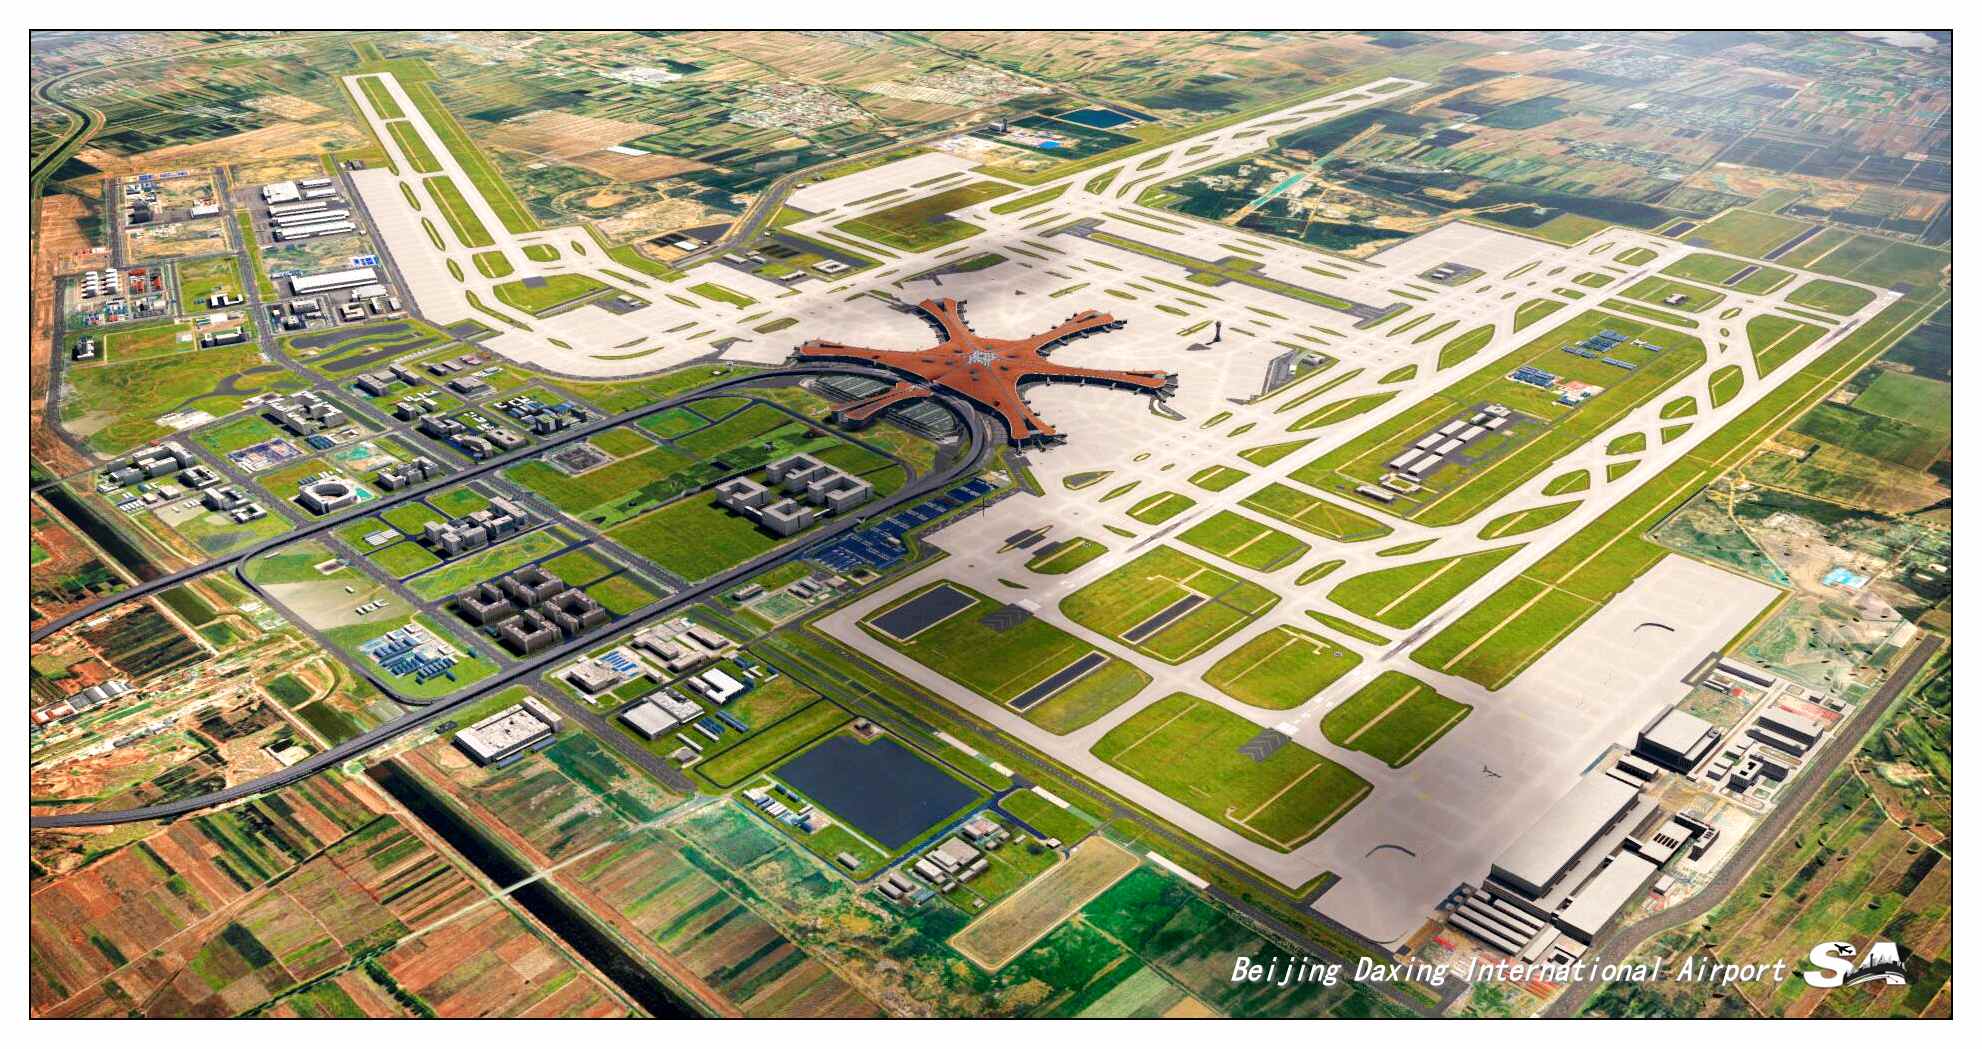 【X-Plane】ZBAD北京大兴国际机场-正式发布-4402 